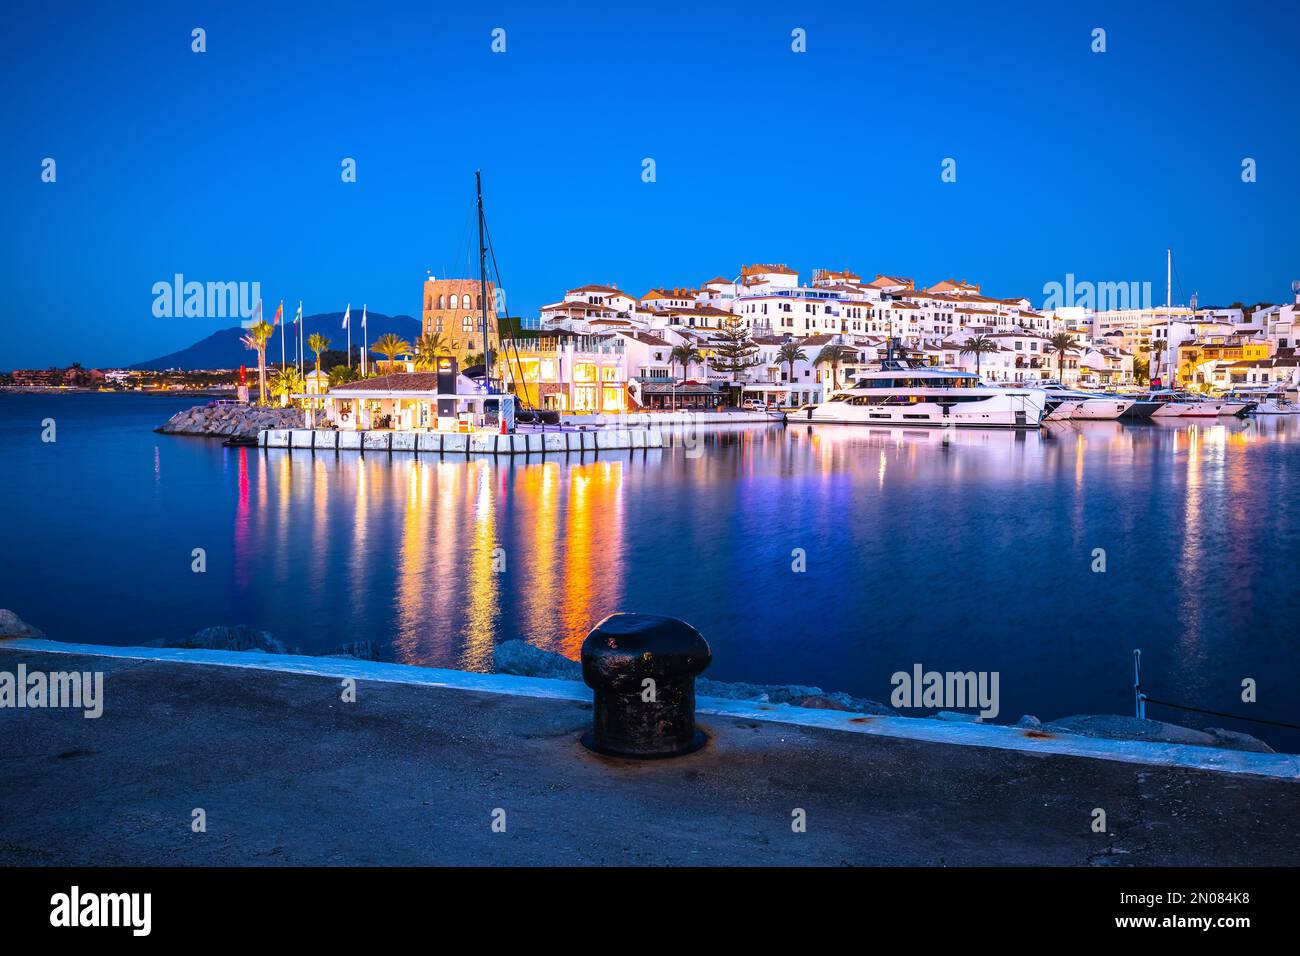 Famoso Puerto Banus vicino a Marbella vista alba, Andalusia regione della Spagna Foto Stock